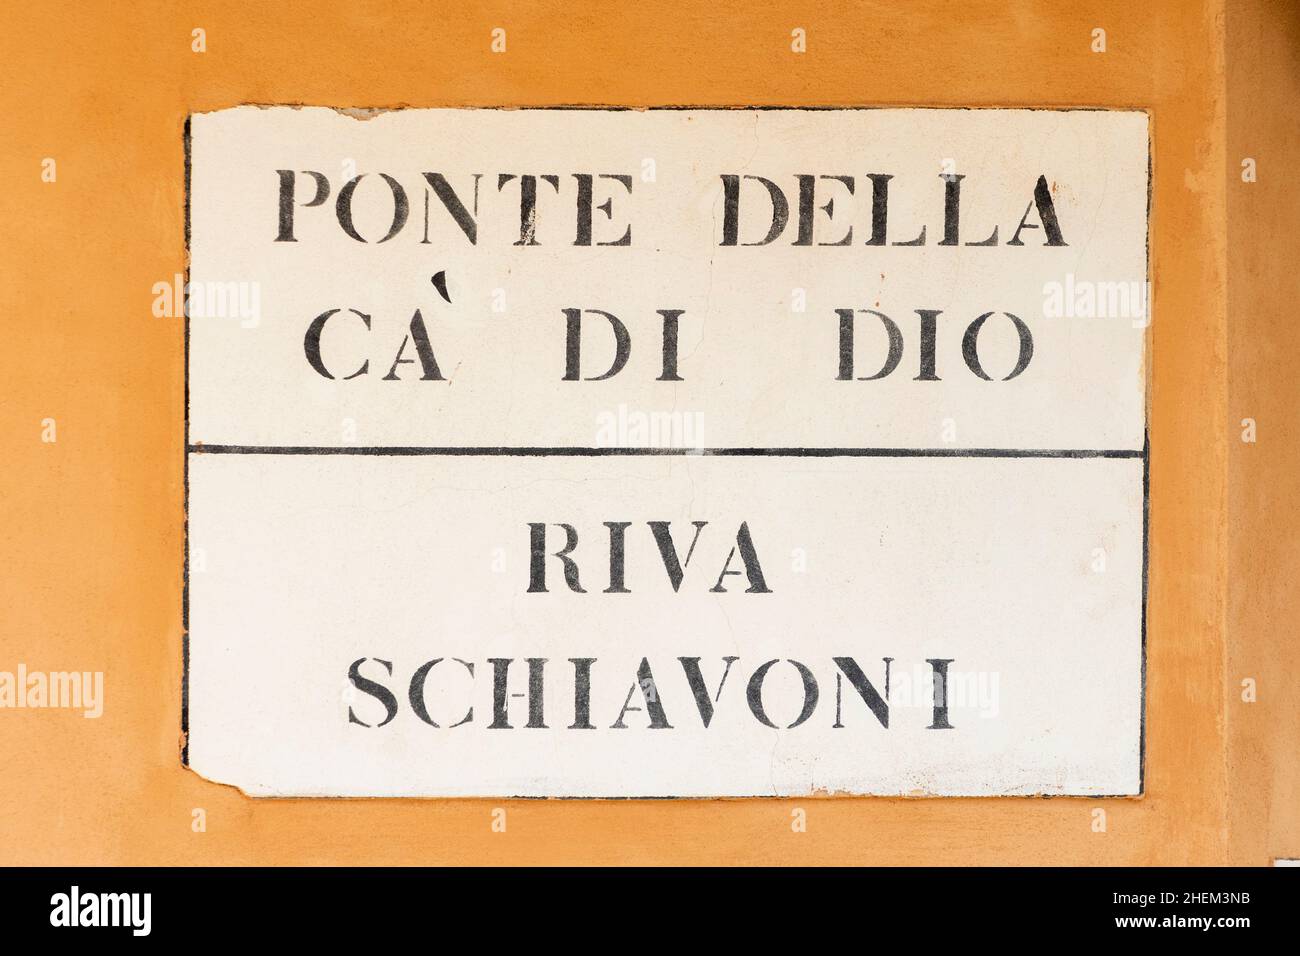 signage Ponte della ca di dio - bridge of God - and Riva Schiavoni - River Schiavoni - in Venice  at an old grunge house wall Stock Photo